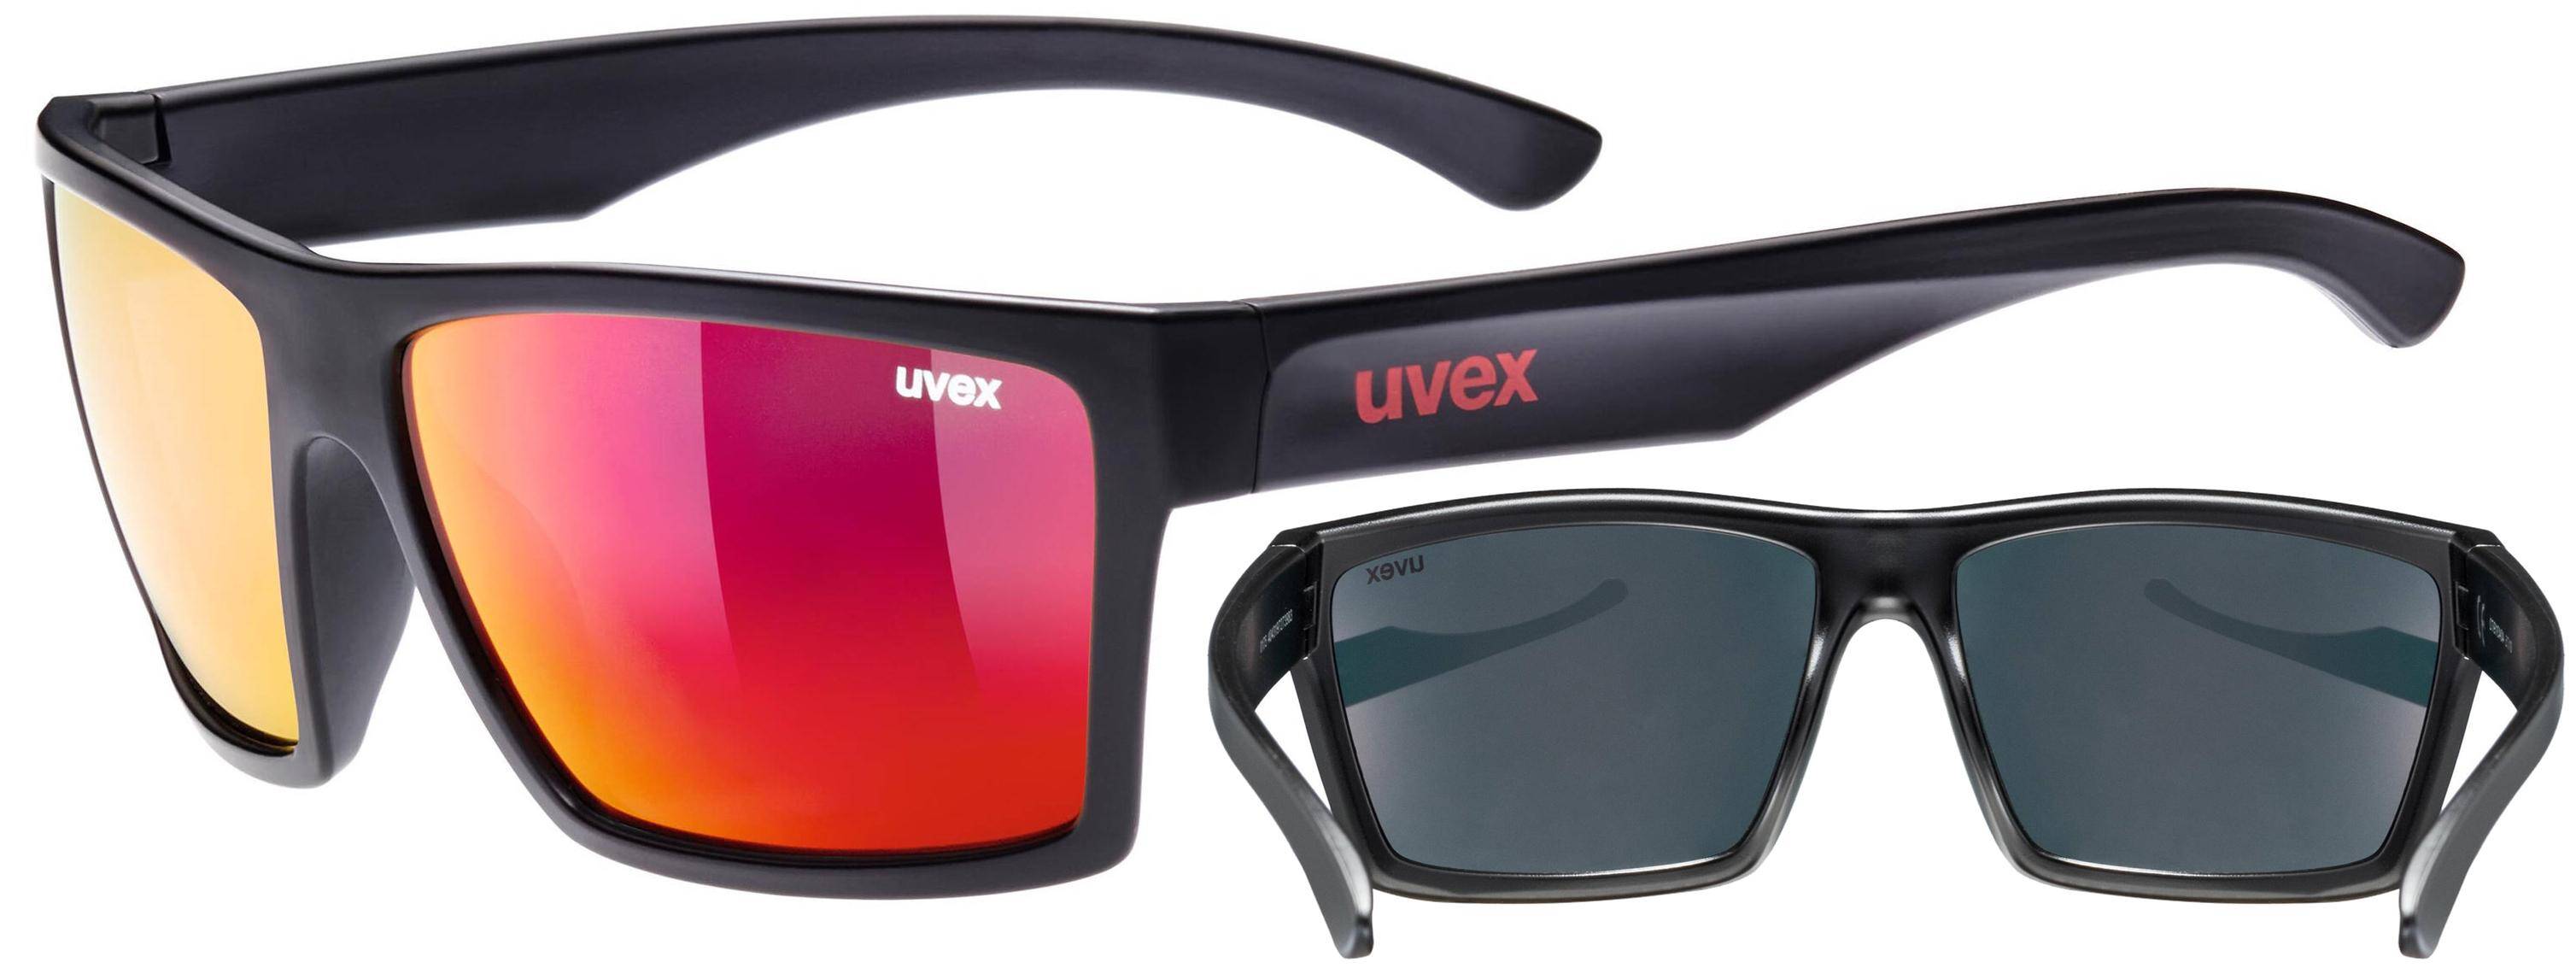 Okulary Uvex Lgl 29 przeciwsłoneczne (Zdjęcie 1)